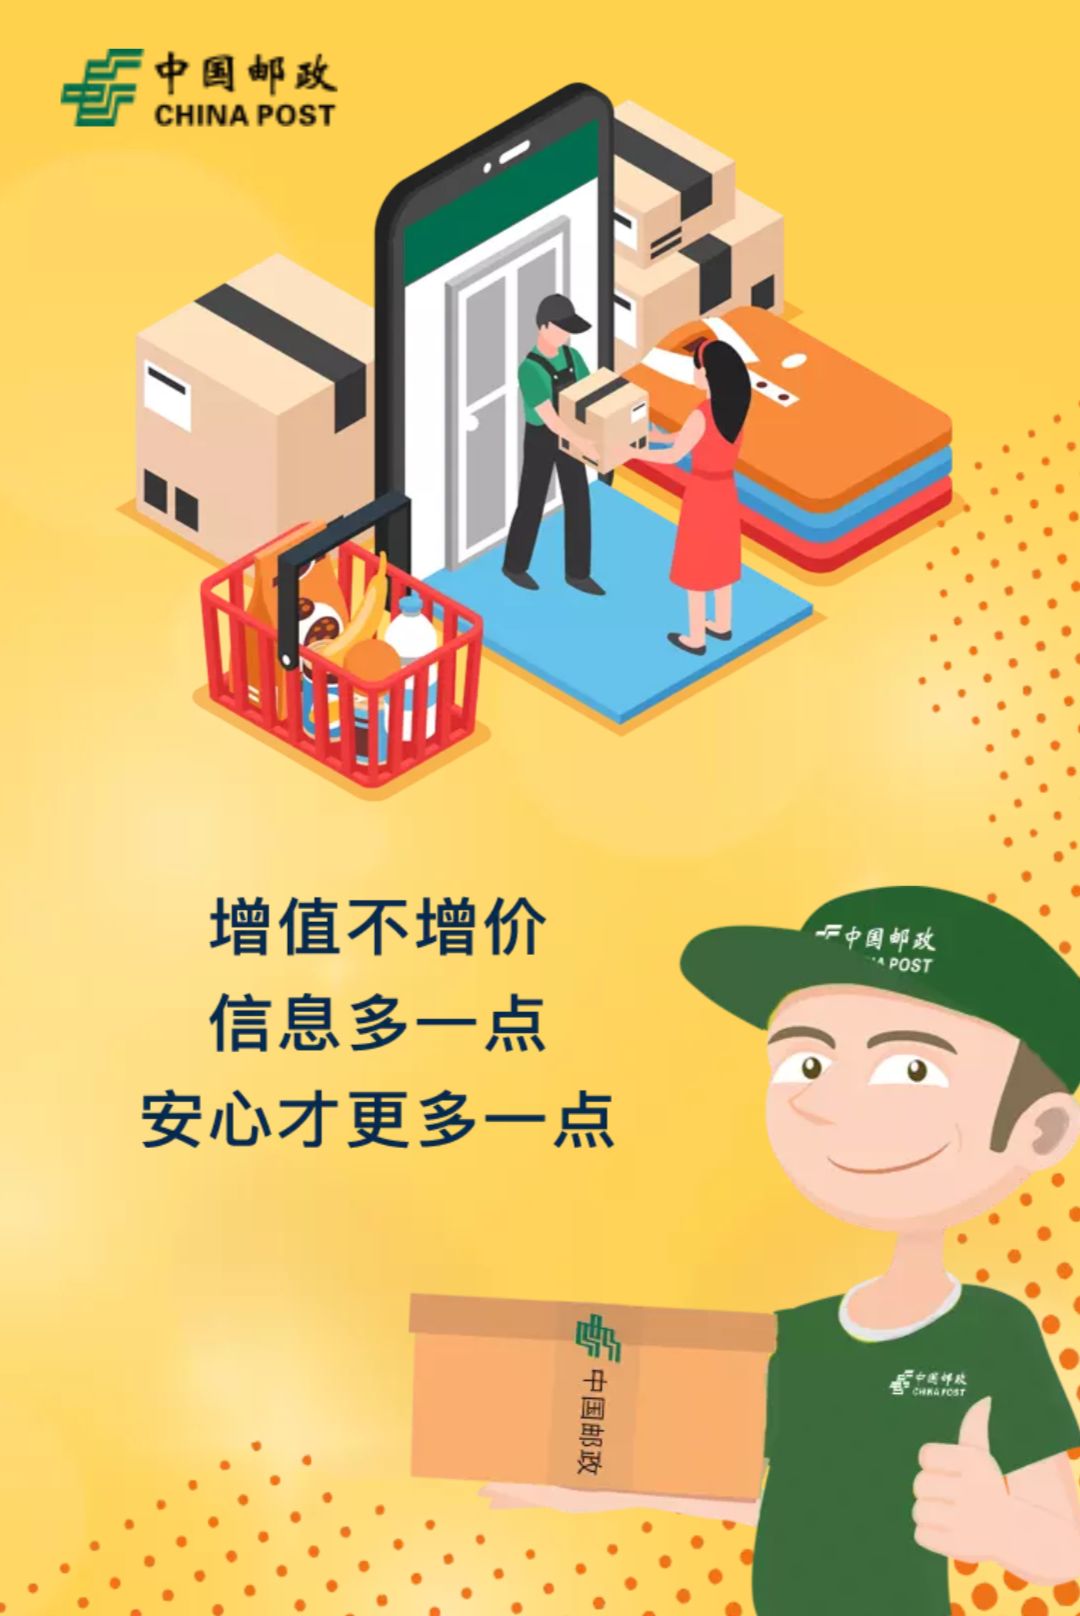 中国邮政美向"平常小包 "产品升级上线啦!